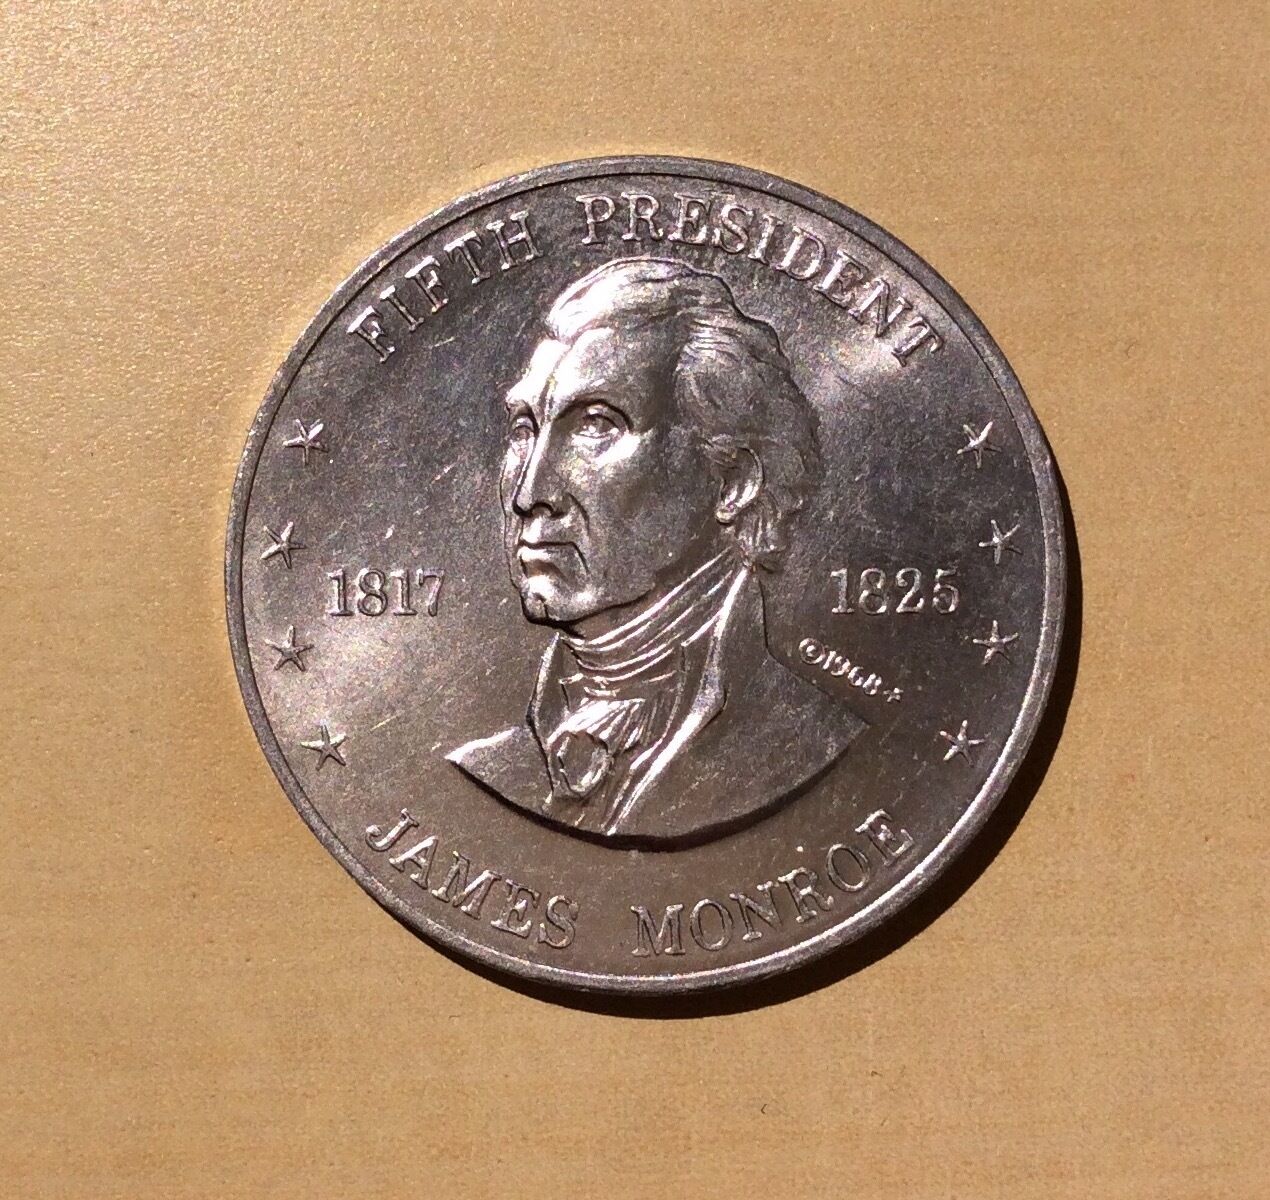 Shell's Mr. President Coin Game James Monroe 5th President (1968) Medal